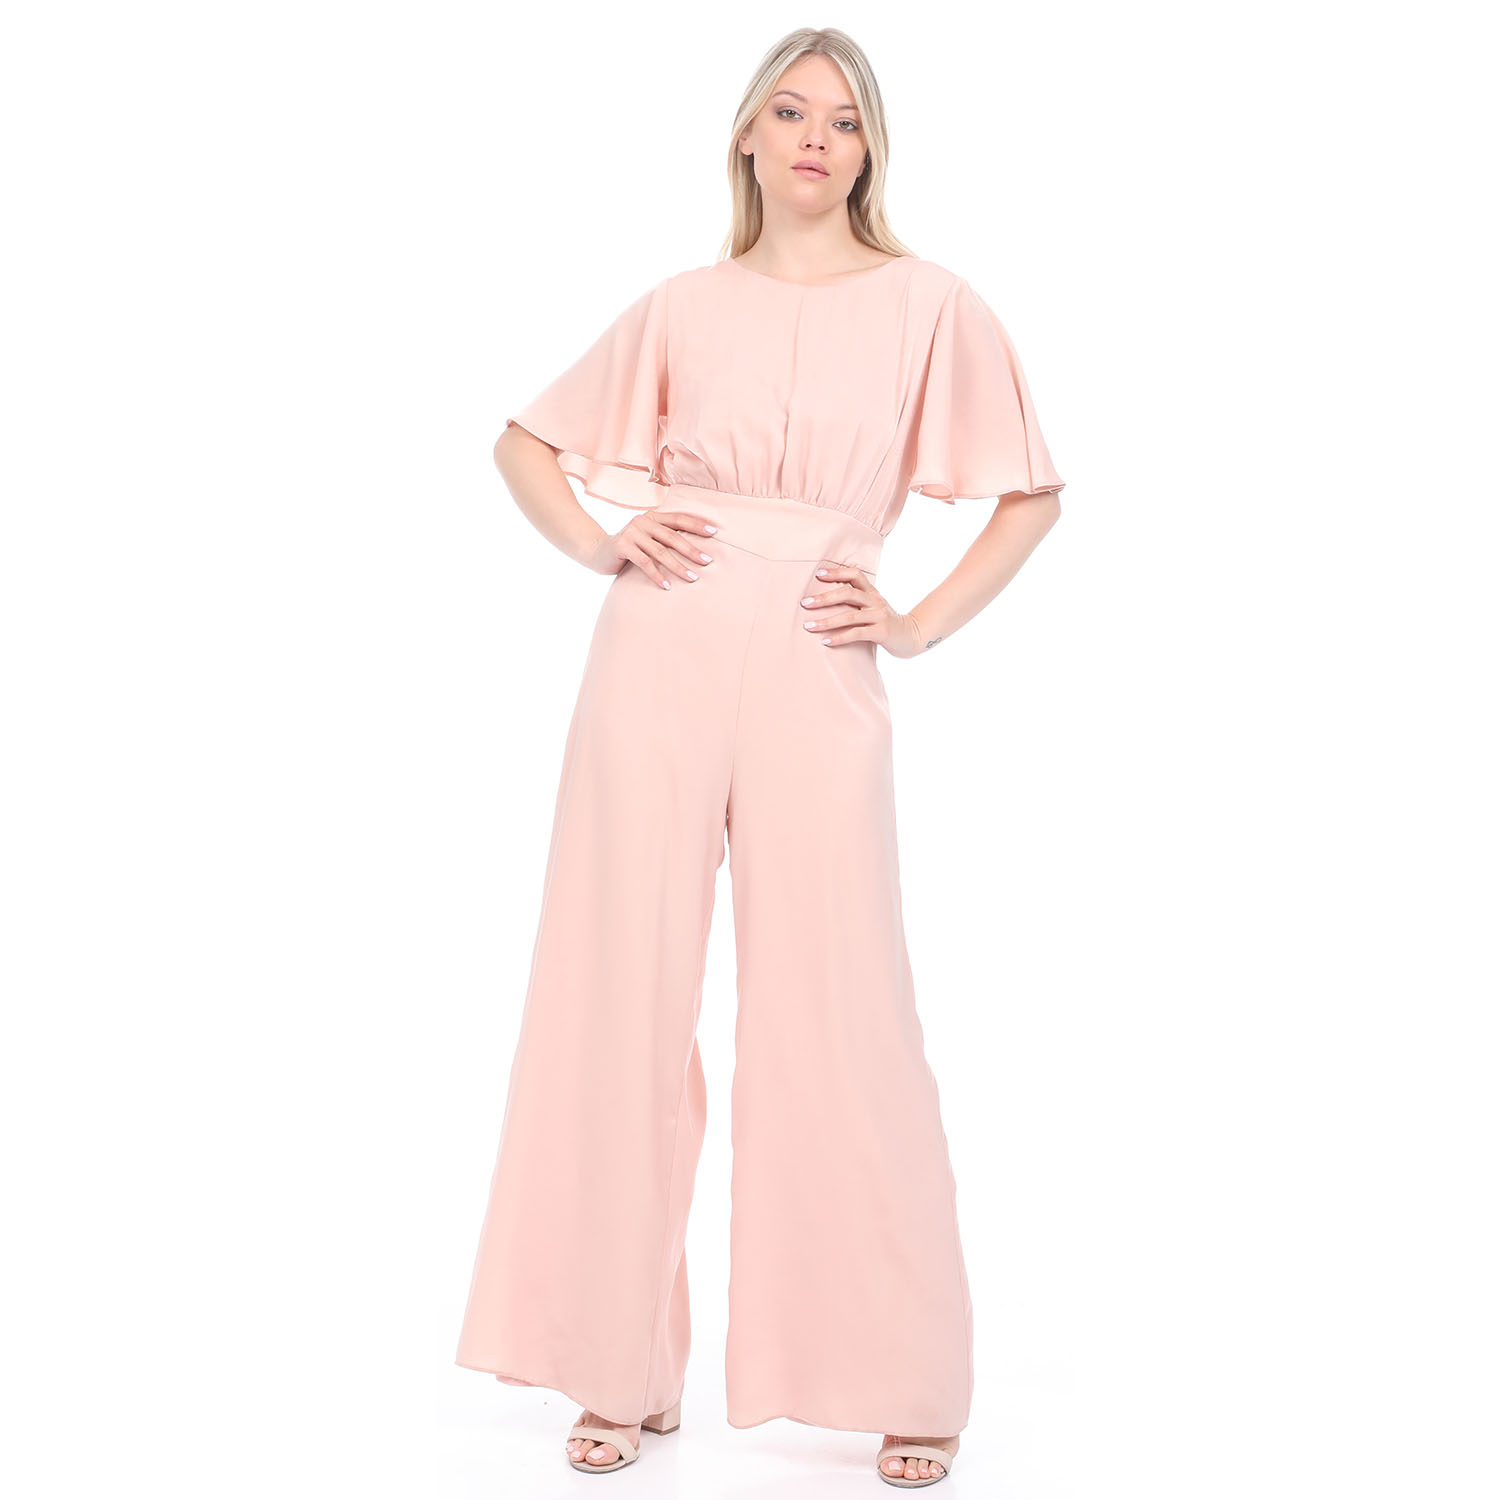 Γυναικεία/Ρούχα/Παντελόνια/Ολόσωμες Φόρμες ATTRATTIVO - Γυναικεία ολόσωμη φόρμα ATTRATTIVO ροζ